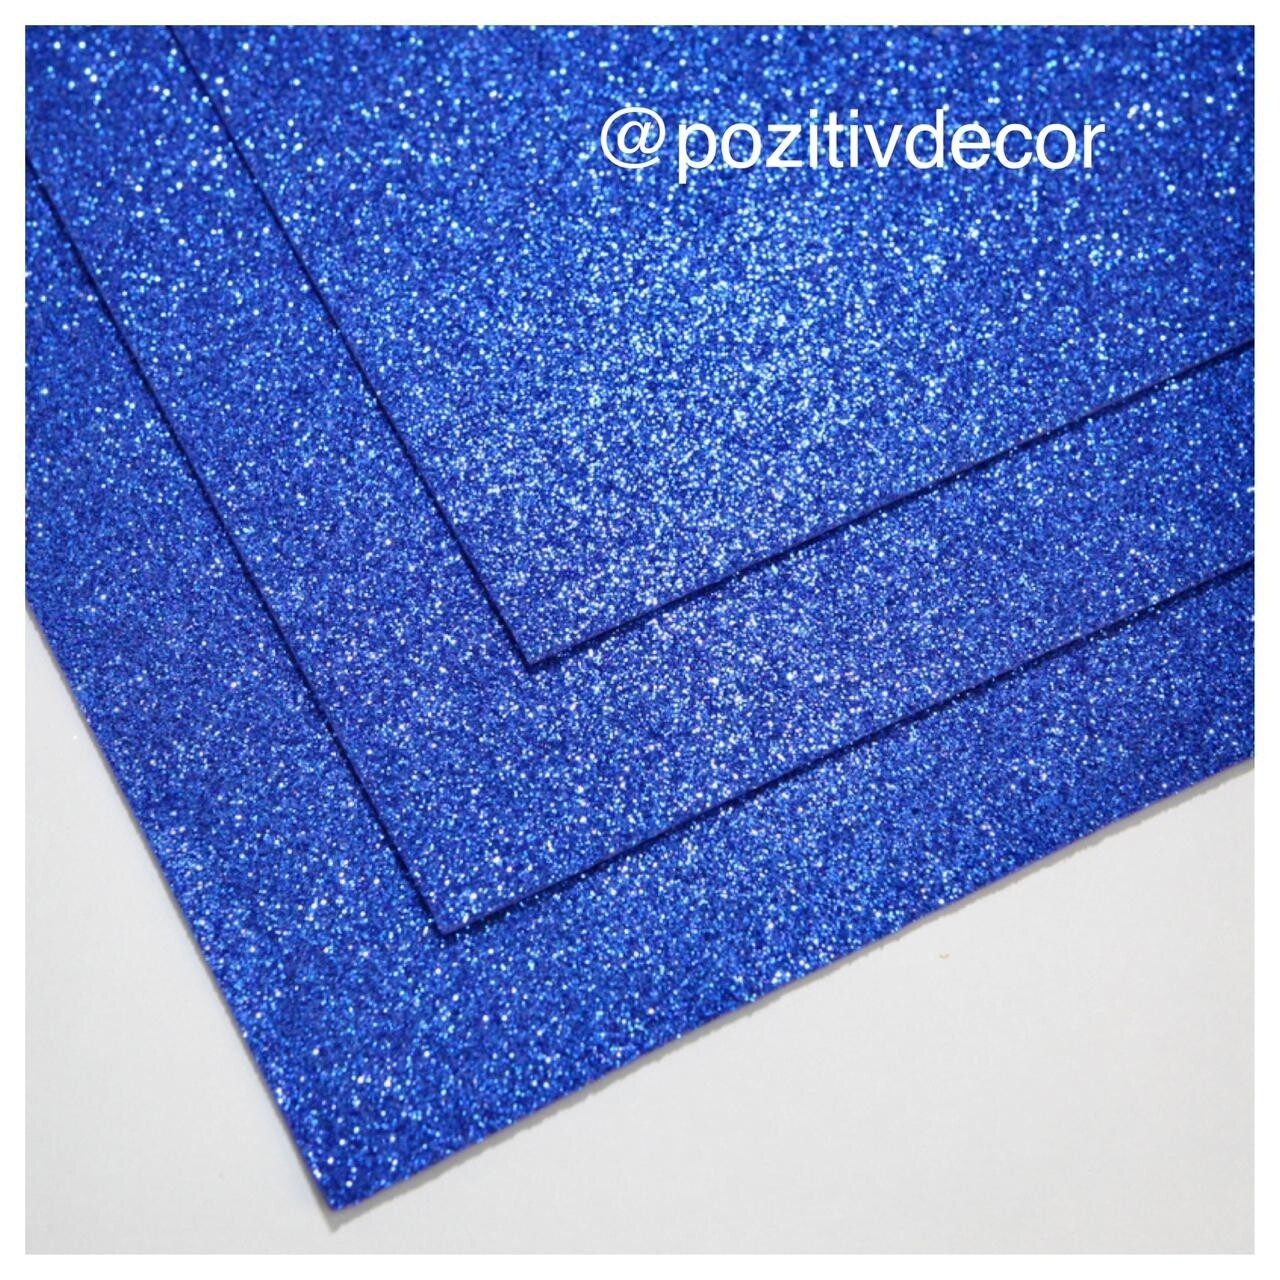 Фоамиран глиттерный - толщина 1,5 мм , размер листа 60/70 см.
Цвет - лазурно-синий